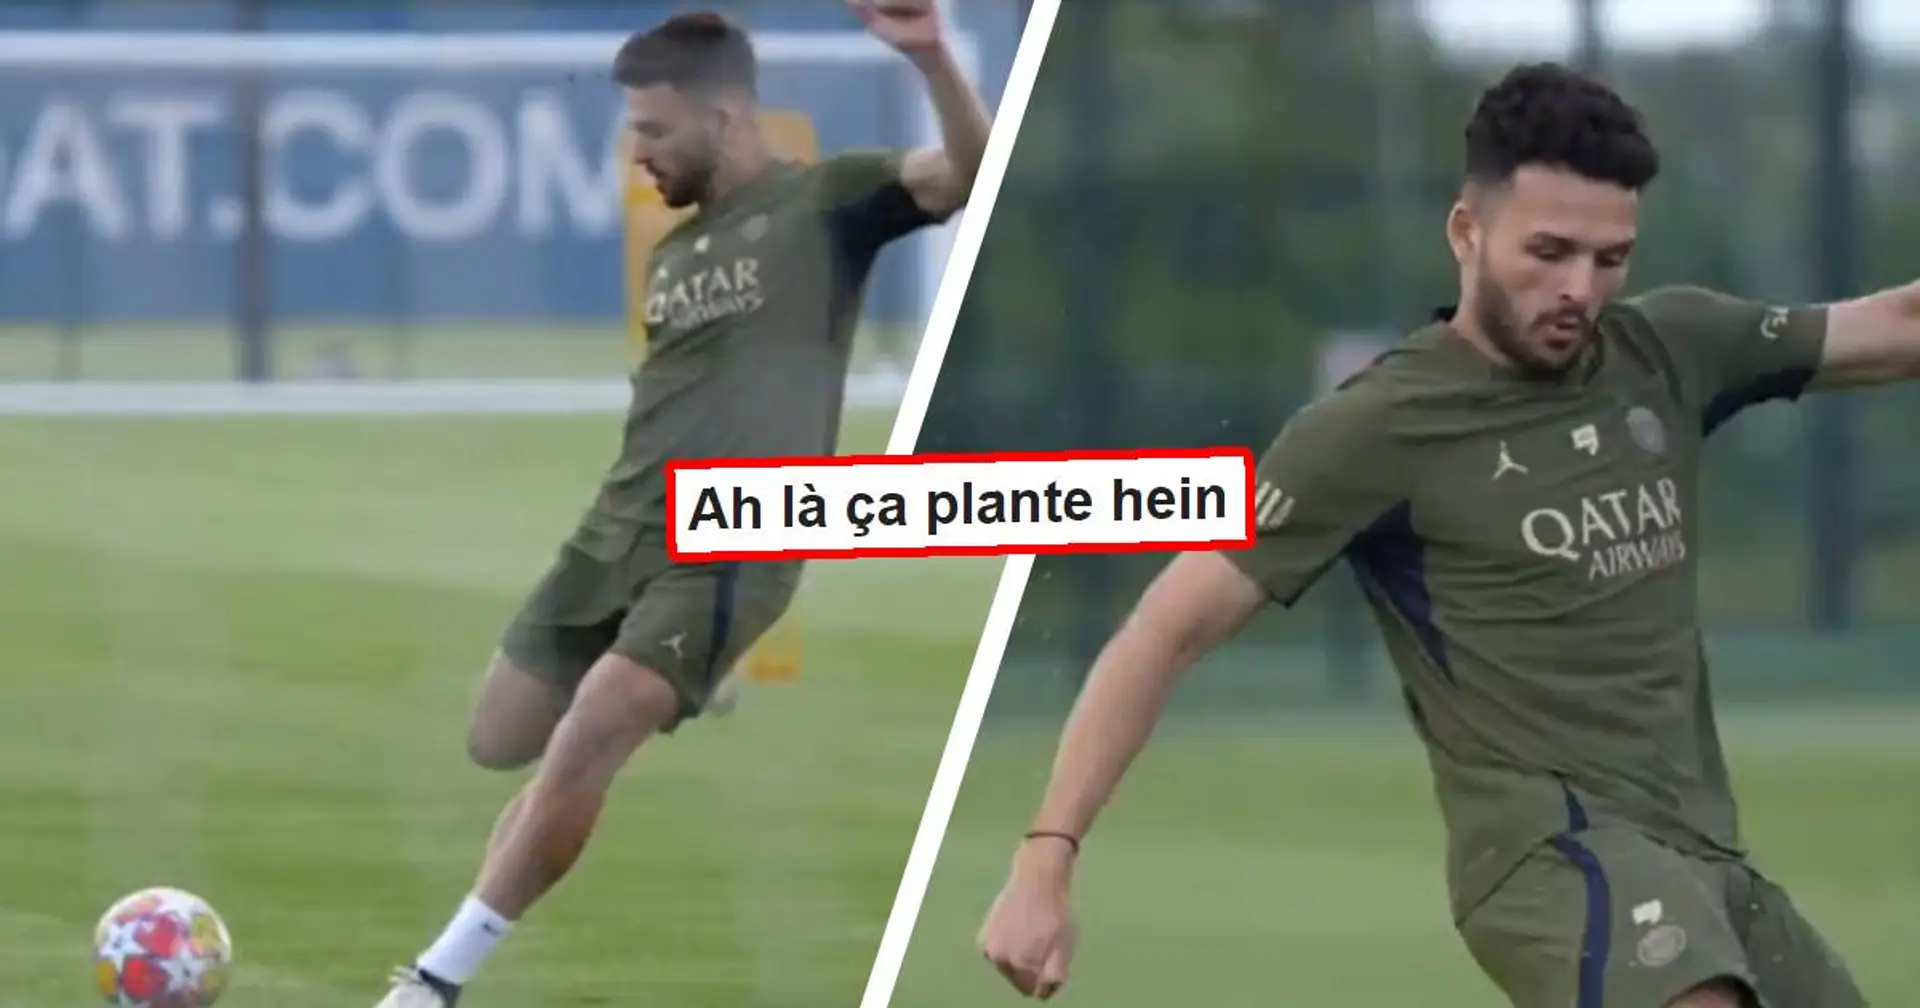 "Je note 3 tirs 3 buts" : les fans réagissent à une vidéo d'entrainement du PSG - un homme attire l'attention